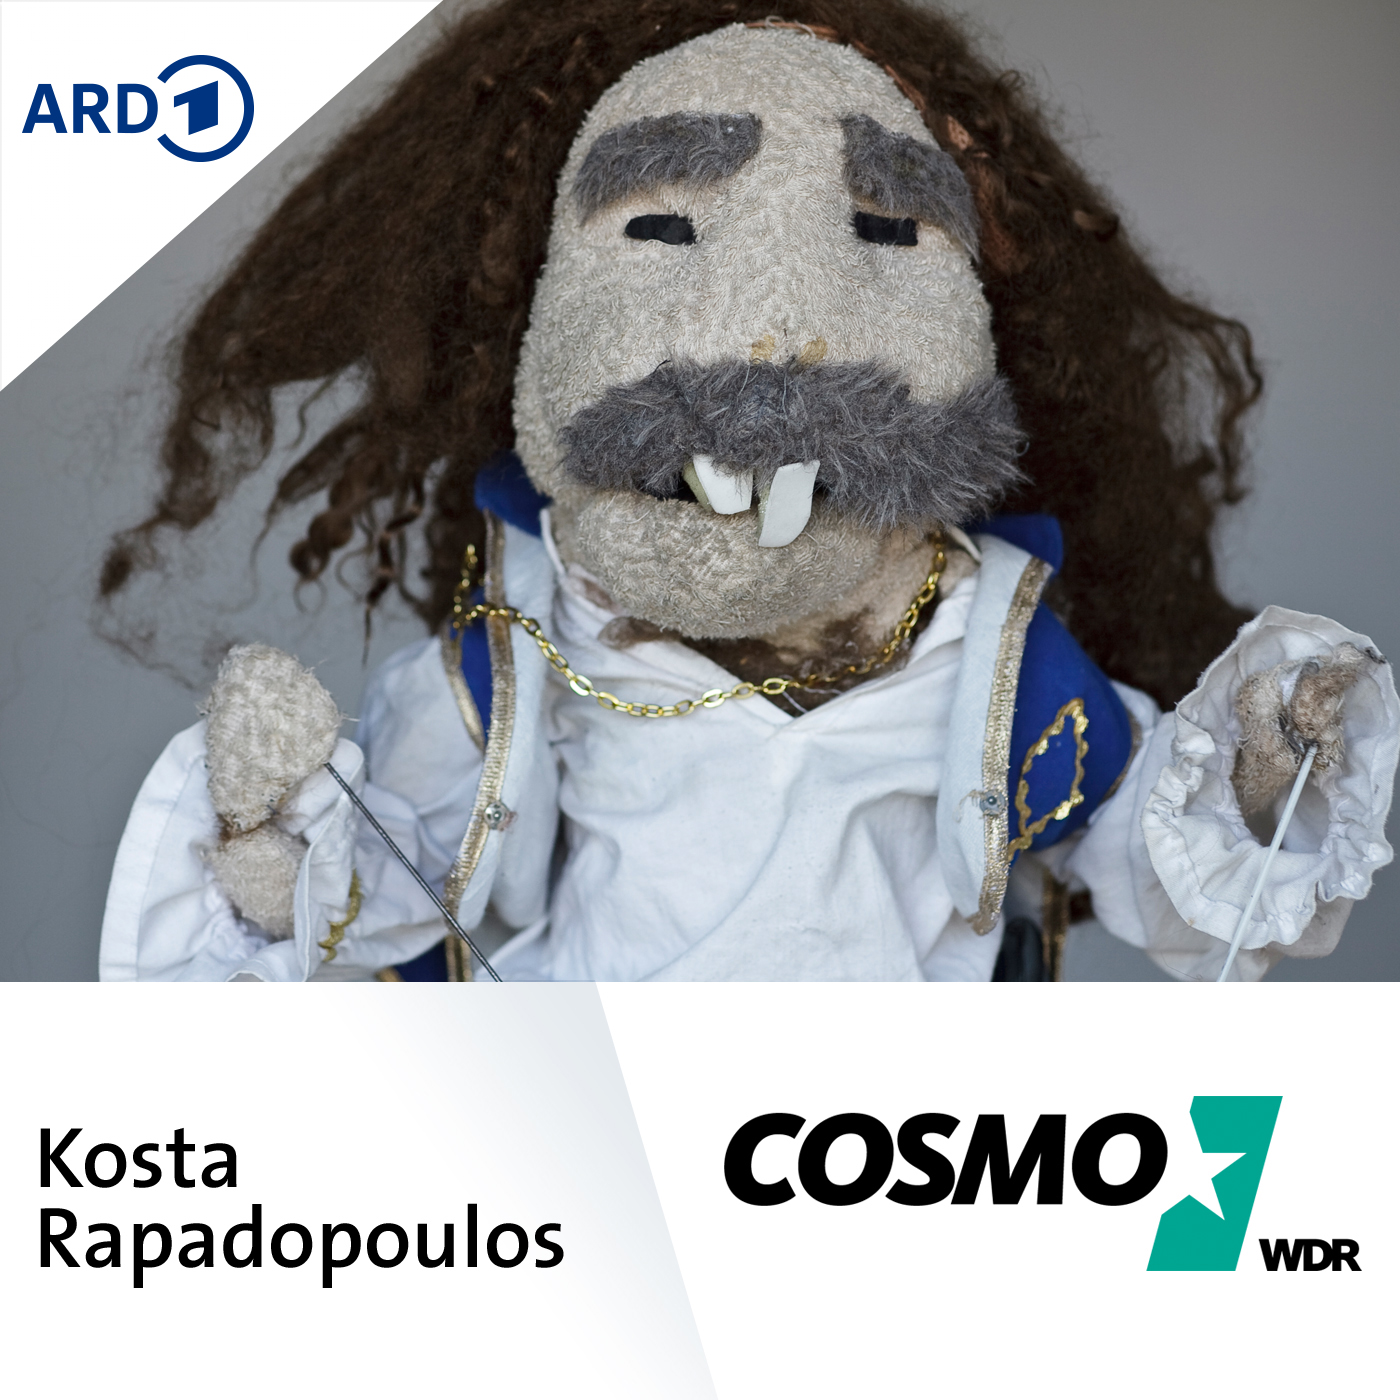 COSMO Kosta Rapadopoulos